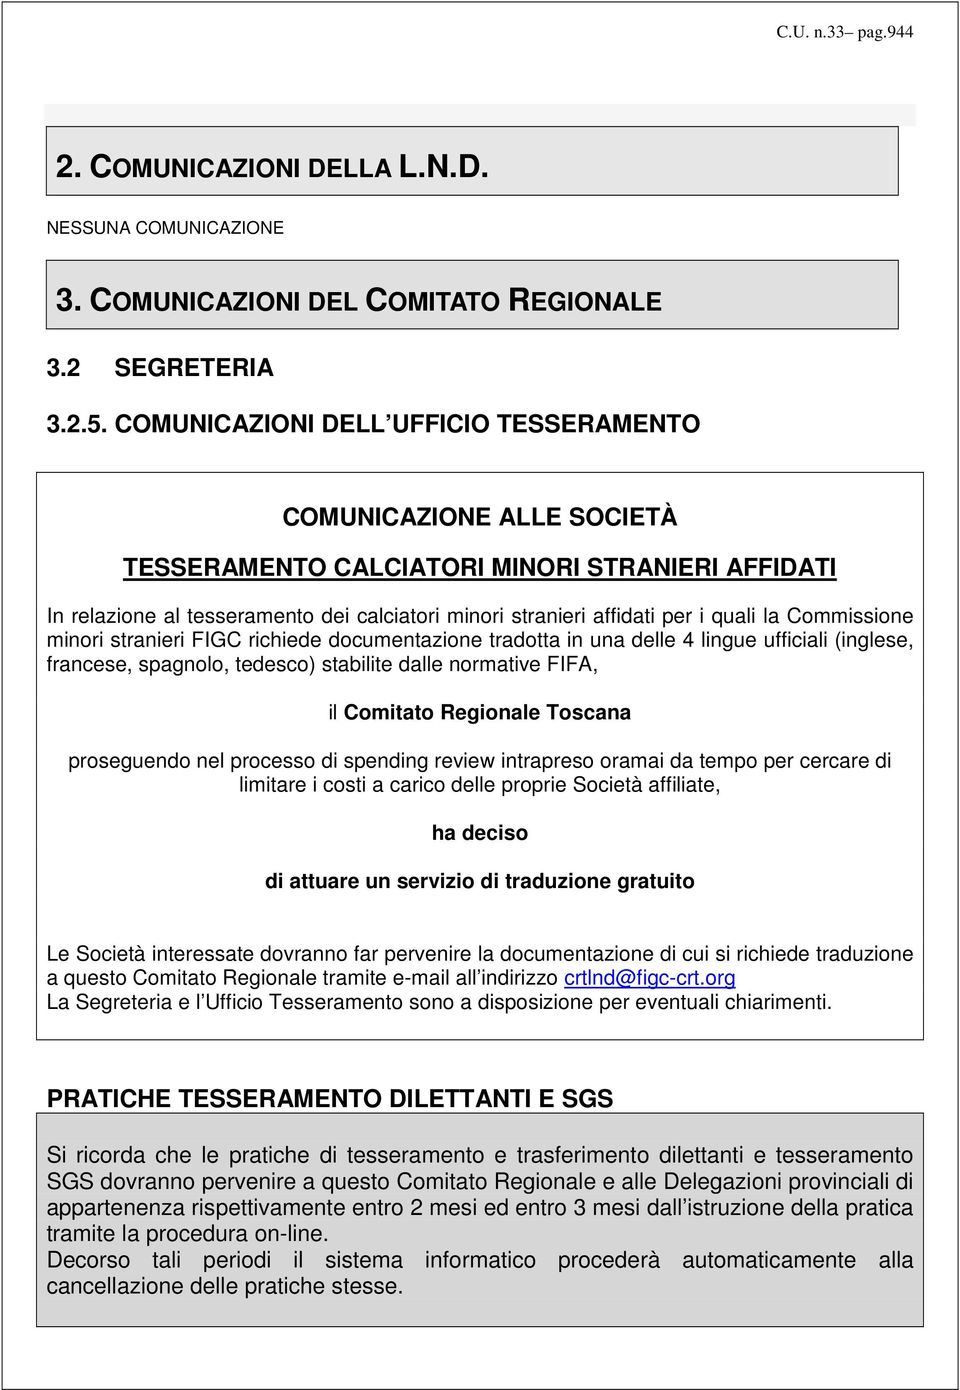 la Commissione minori stranieri FIGC richiede documentazione tradotta in una delle 4 lingue ufficiali (inglese, francese, spagnolo, tedesco) stabilite dalle normative FIFA, il Comitato Regionale